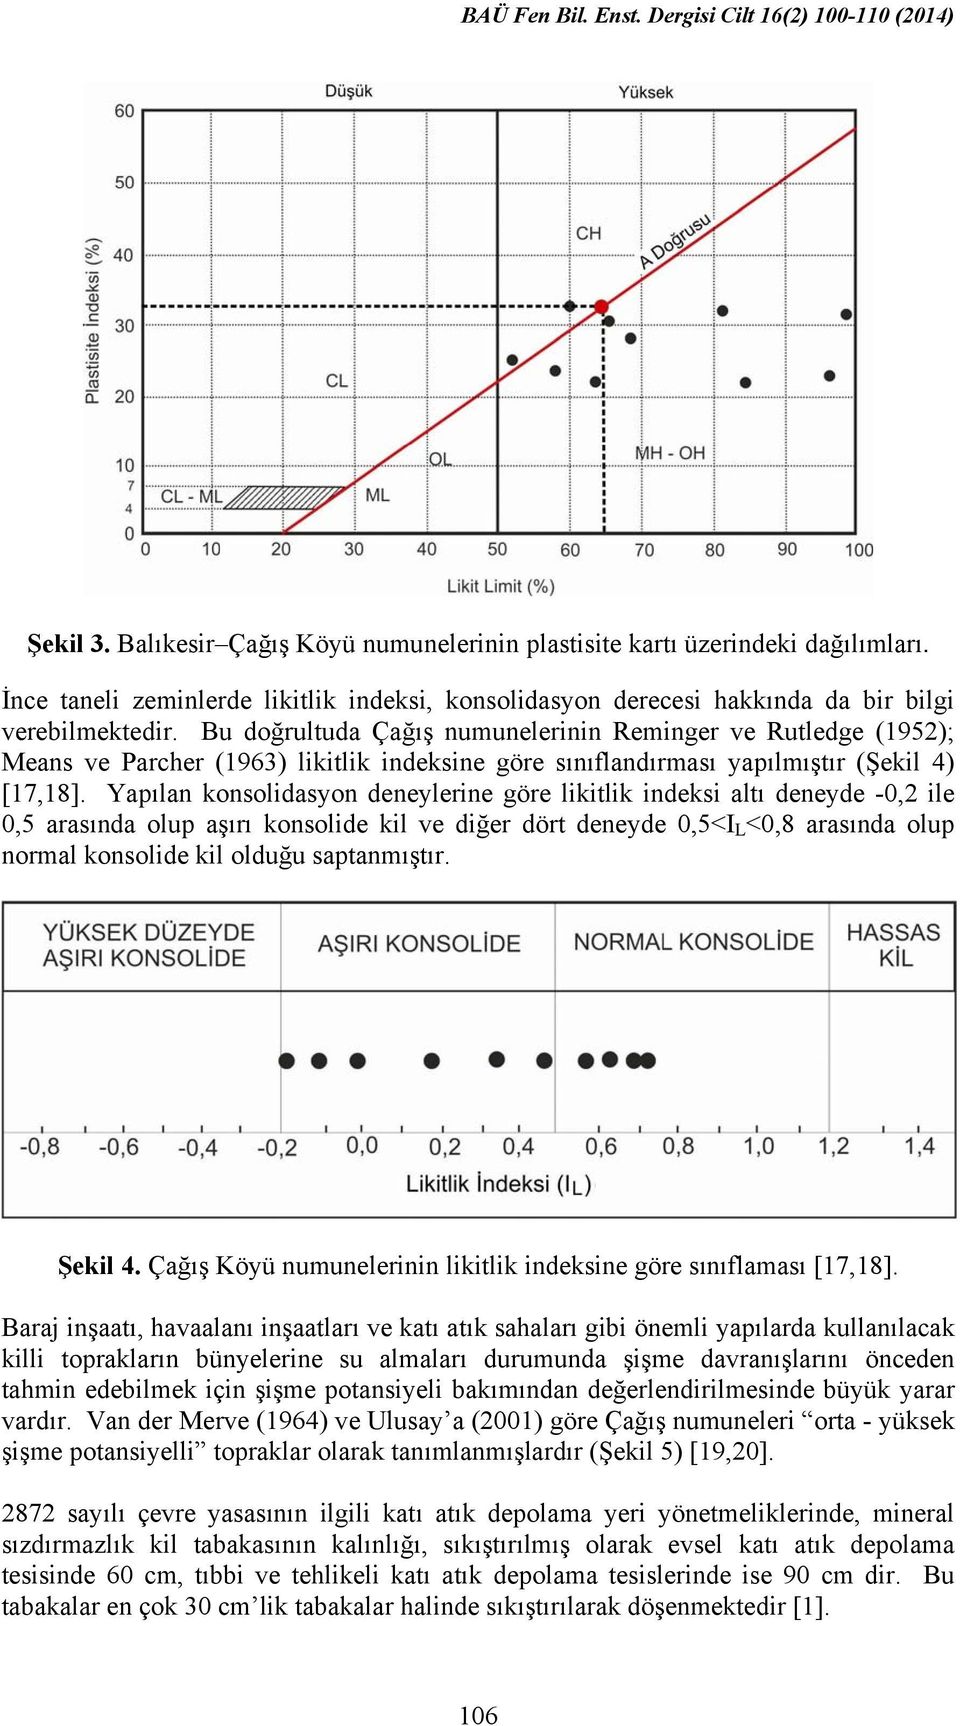 Yapılan konsolidasyon deneylerine göre likitlik indeksi altı deneyde -0,2 ile 0,5 arasında olup aşırı konsolide kil ve diğer dört deneyde 0,5<I L <0,8 arasında olup normal konsolide kil olduğu